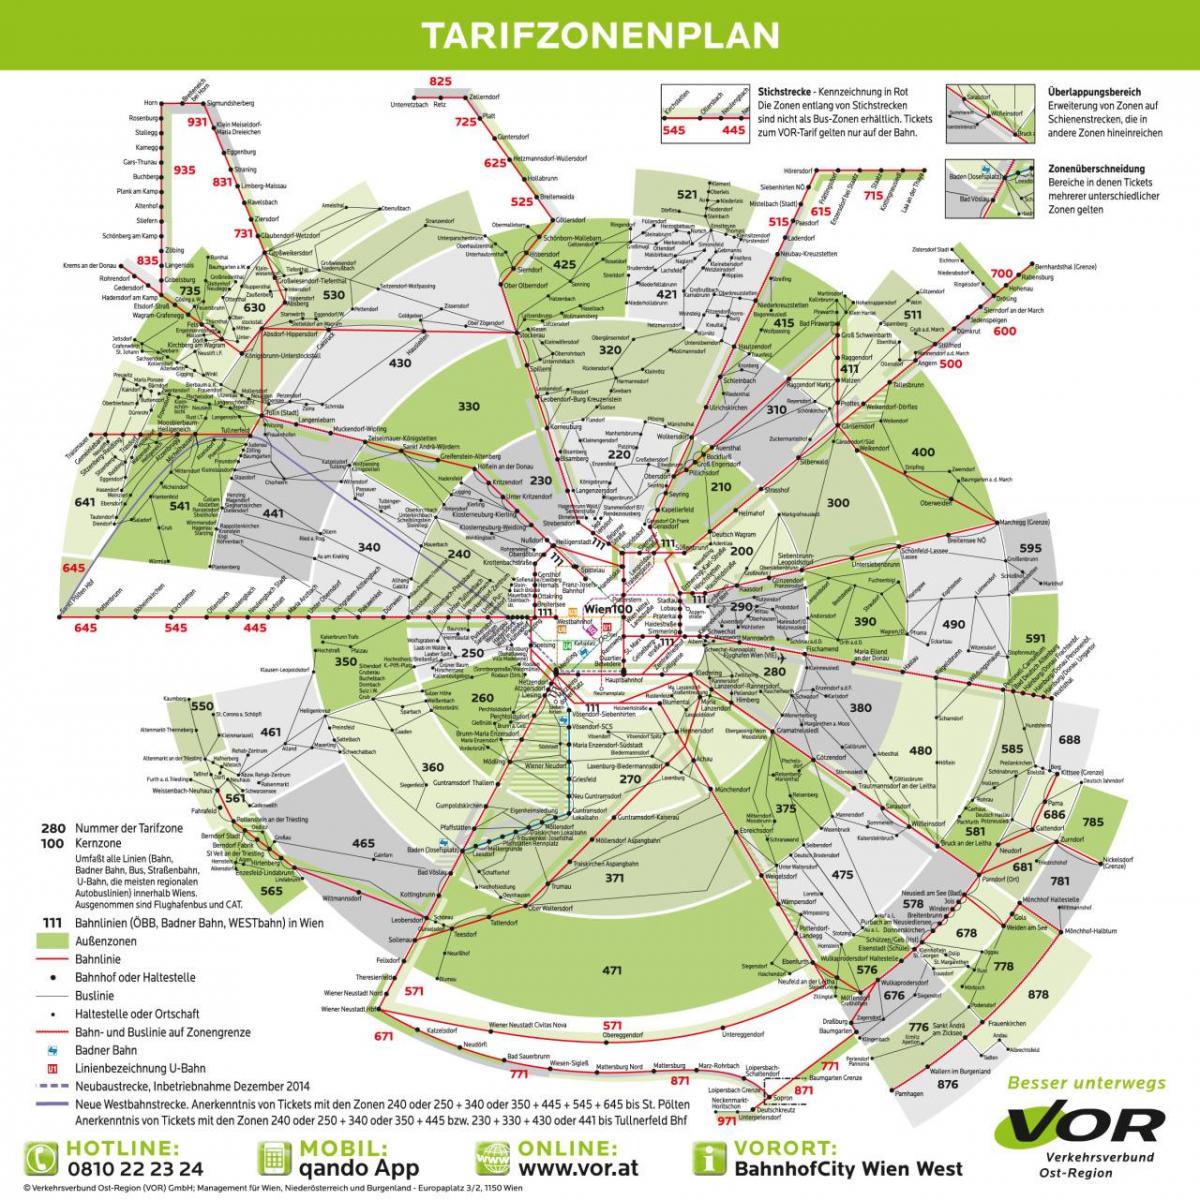 خريطة فيينا النقل مناطق